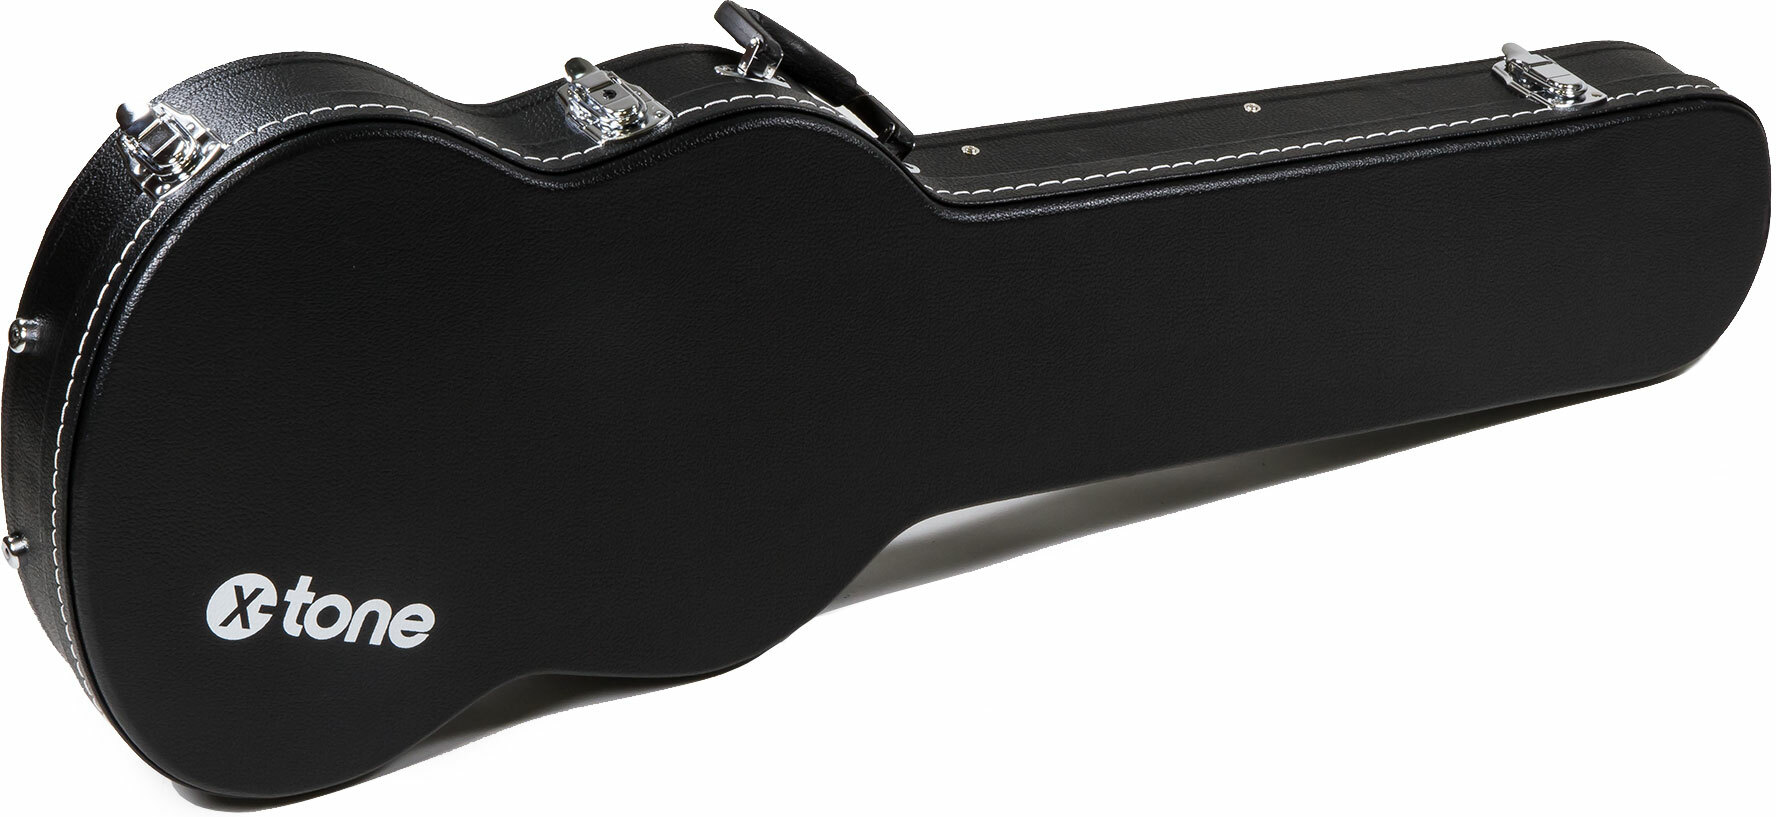 X-tone 1503 Standard Electrique Sg En Forme Black - Electric guitar case - Main picture